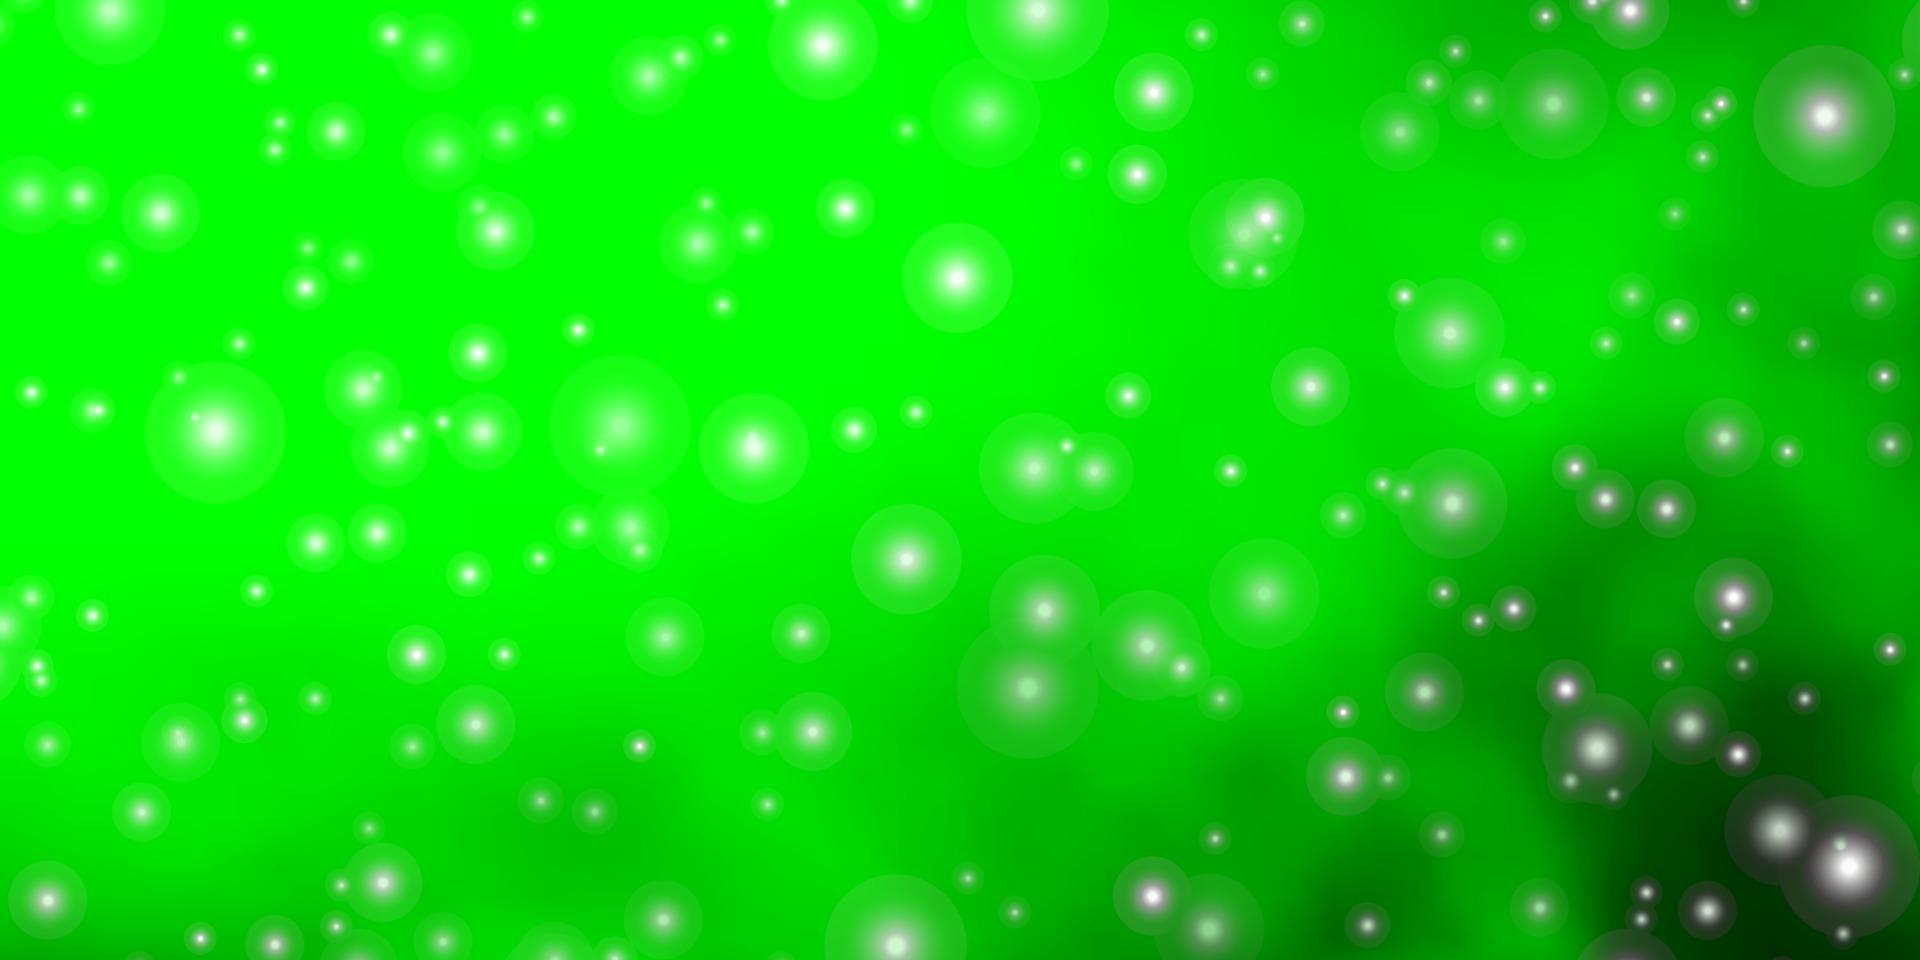 Fondo de vector verde claro con estrellas de colores.